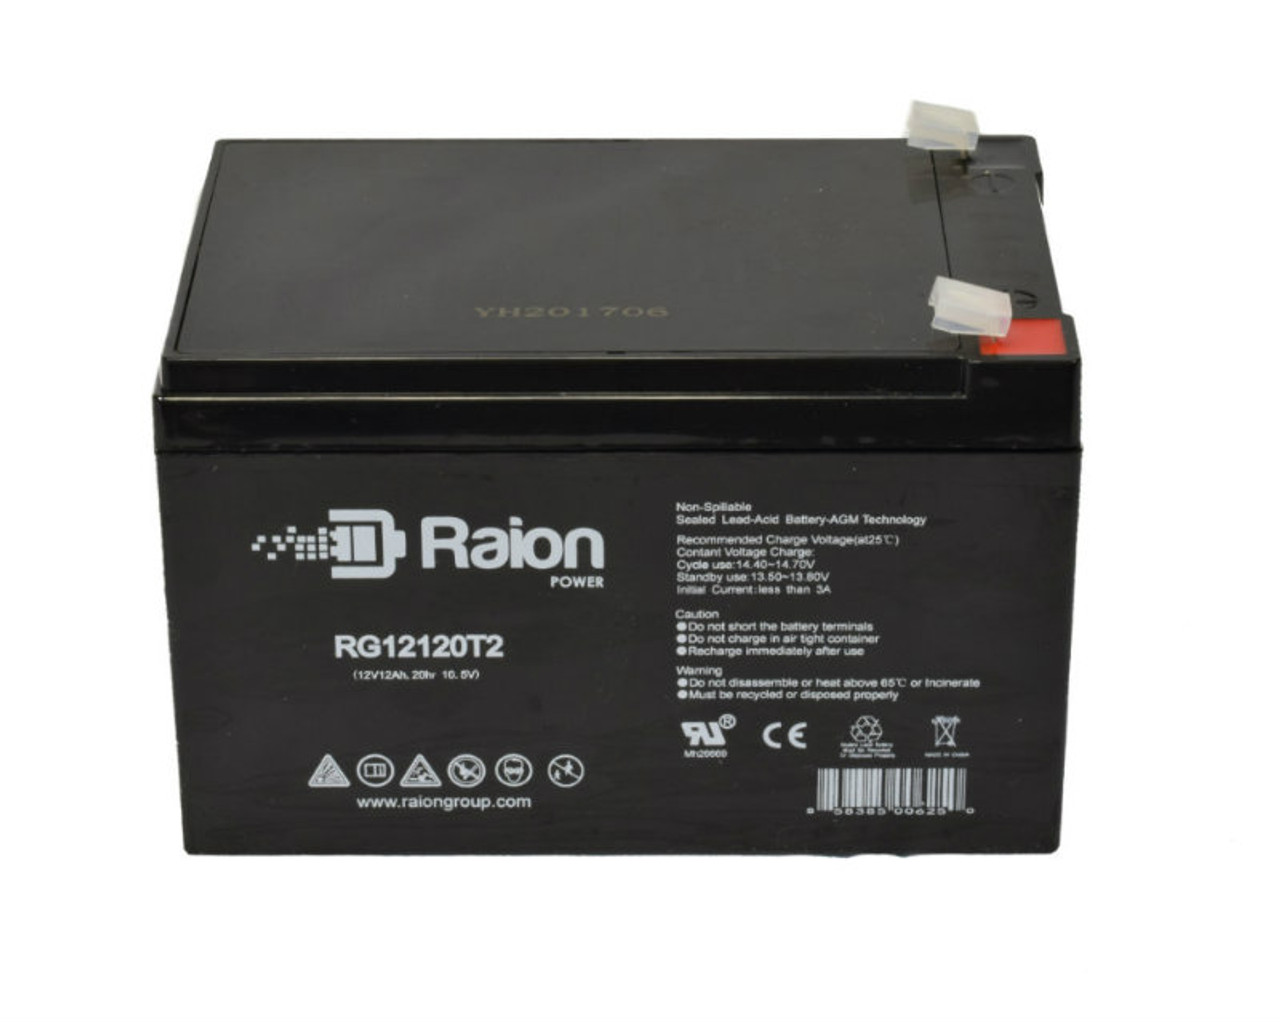 Raion Power RG12120T2 SLA Battery for Kinghero SJ12V14Ah